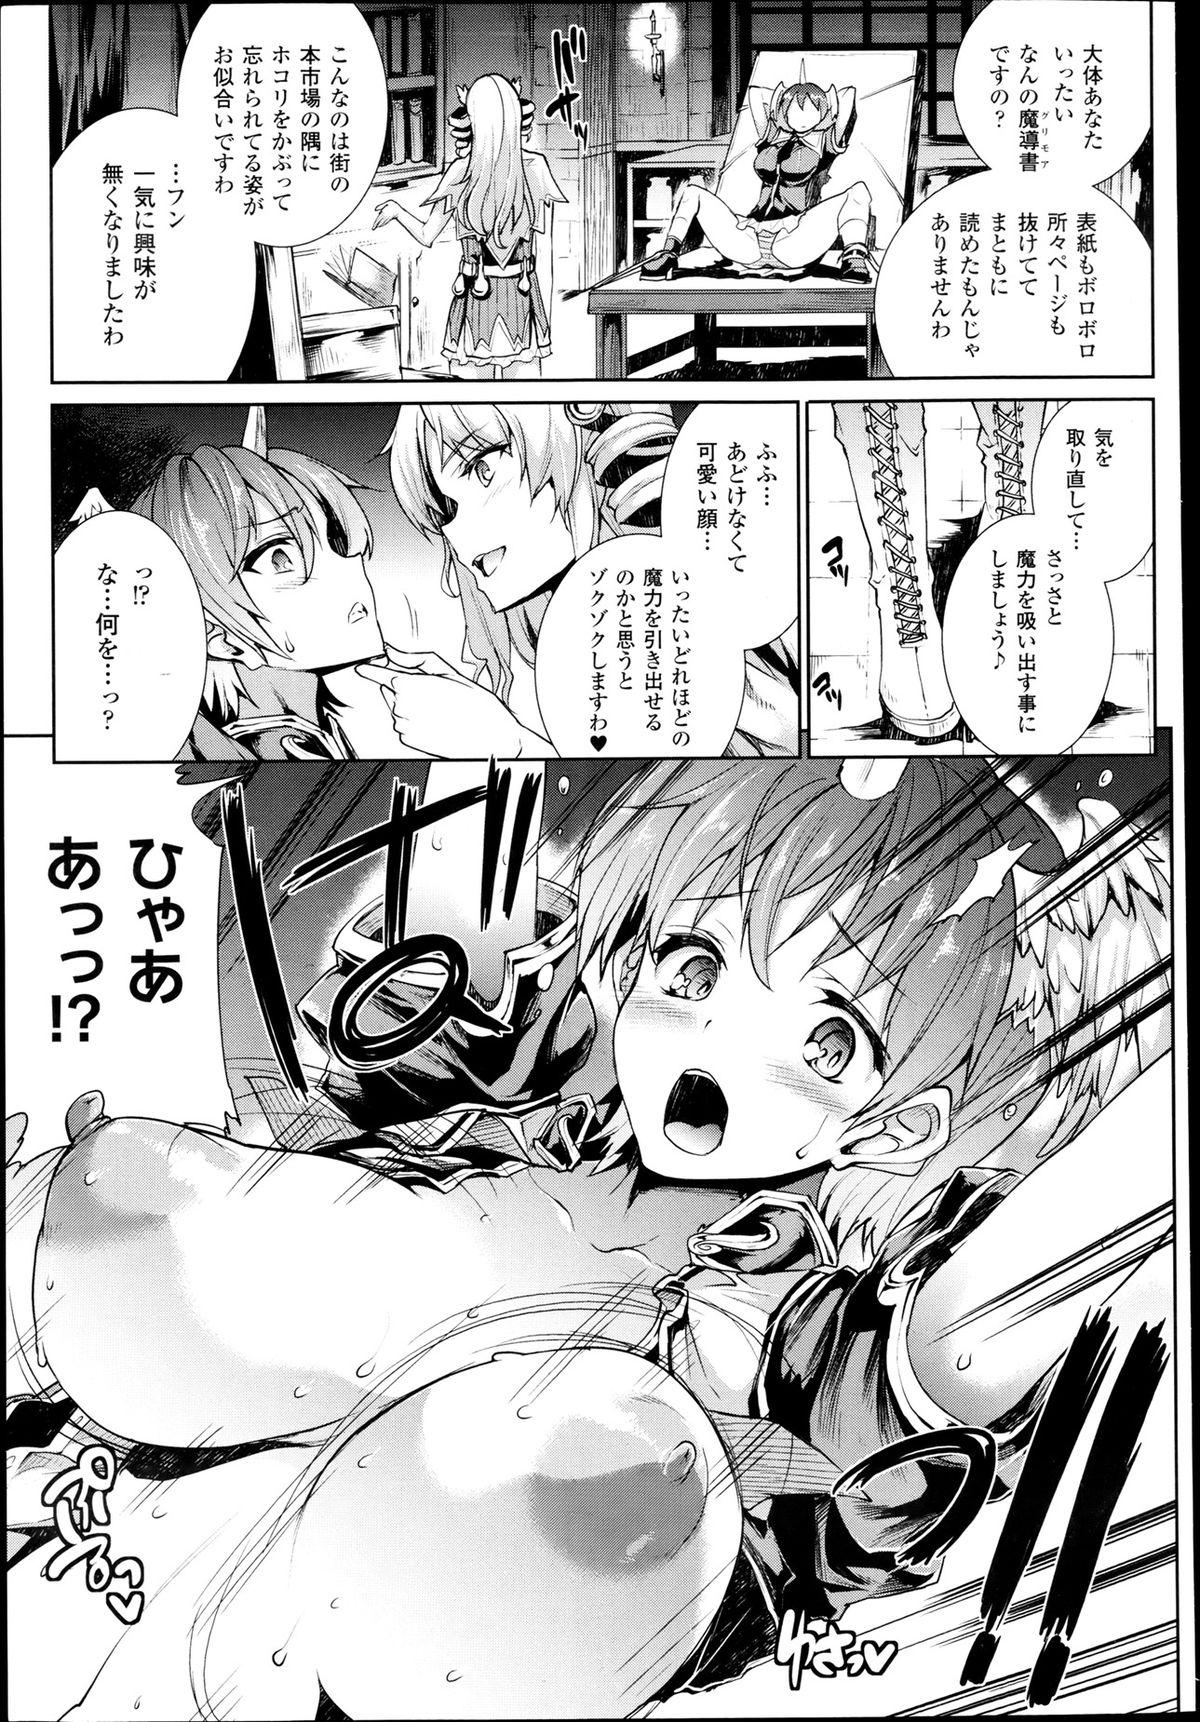 Coeds [Erect Sawaru] Shinkyoku no Grimoire -PANDRA saga 2nd story- Ch 07-9.5 Slut Porn - Page 11